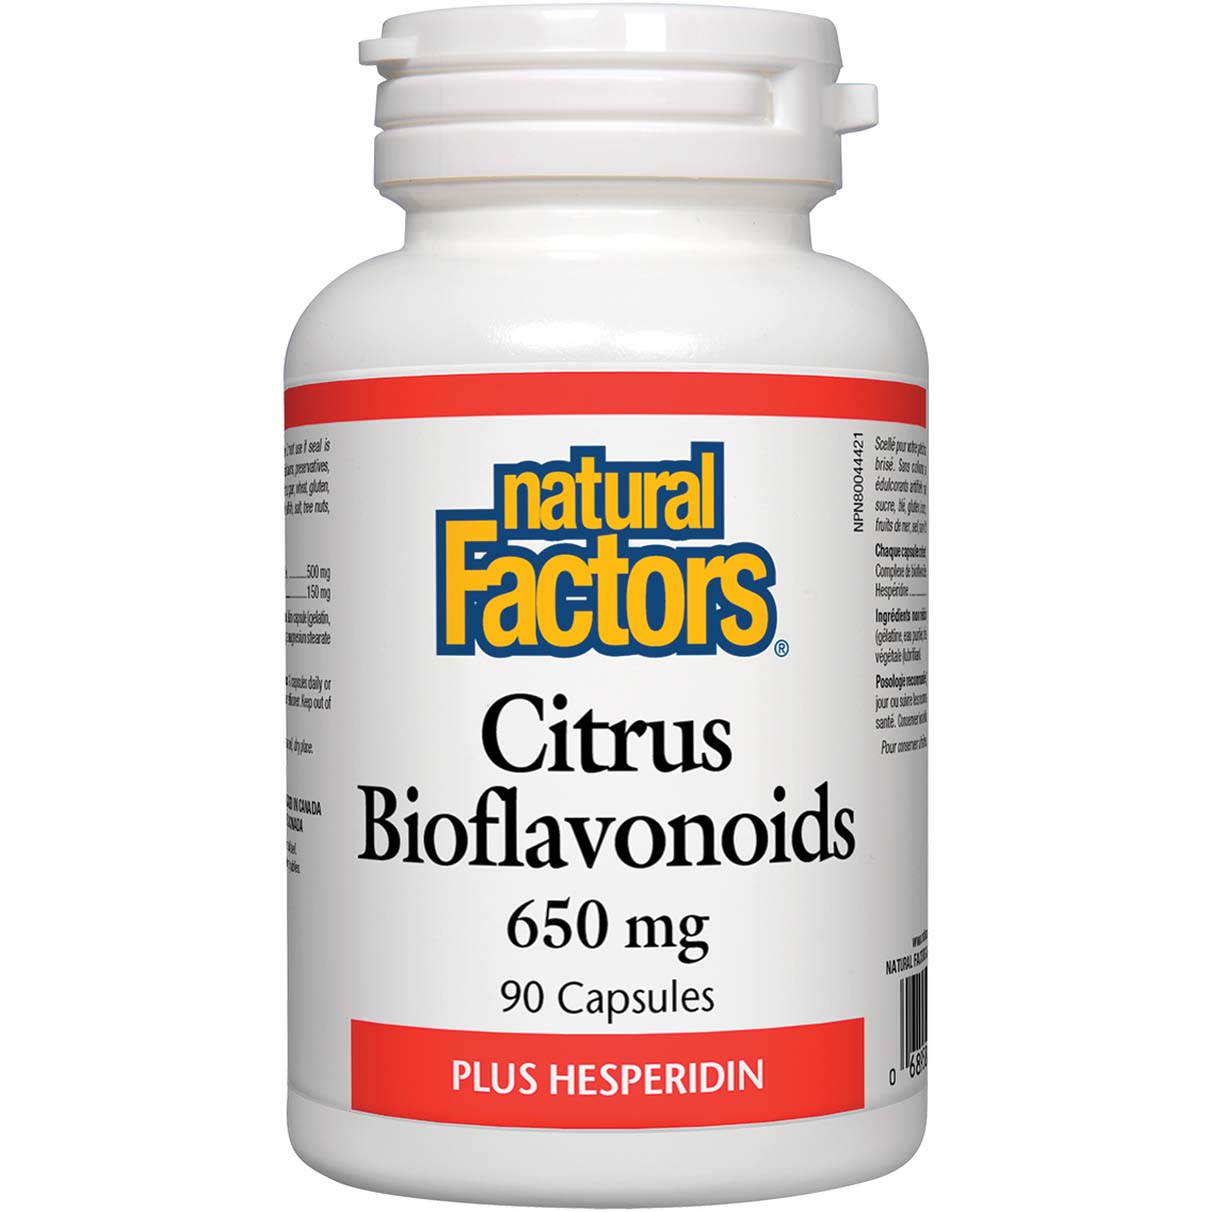 Natural Factors Citrus Bioflavonoids 650 Mg 90 Capsules, 650 mg, 90 Capsules